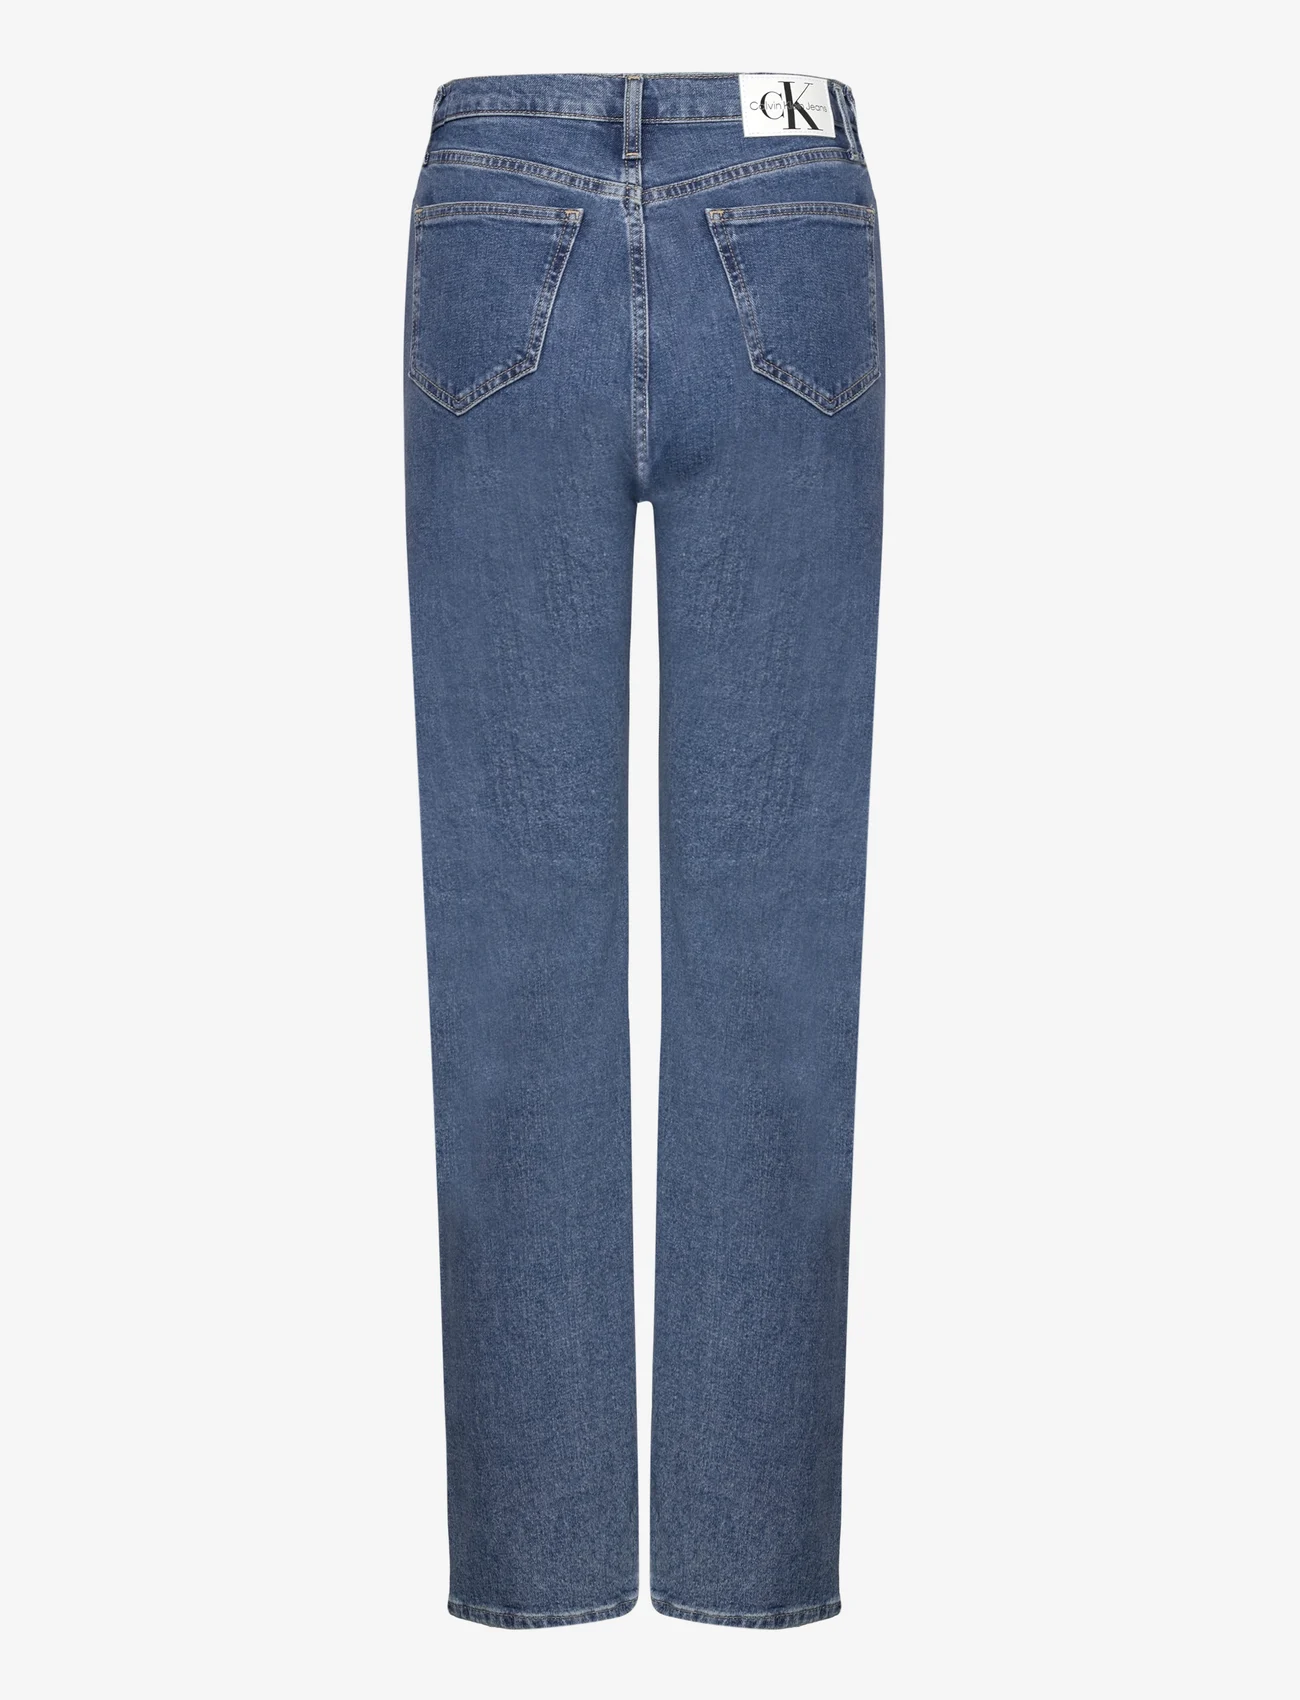 Calvin Klein Jeans - HIGH RISE STRAIGHT - tiesaus kirpimo džinsai - denim medium - 1